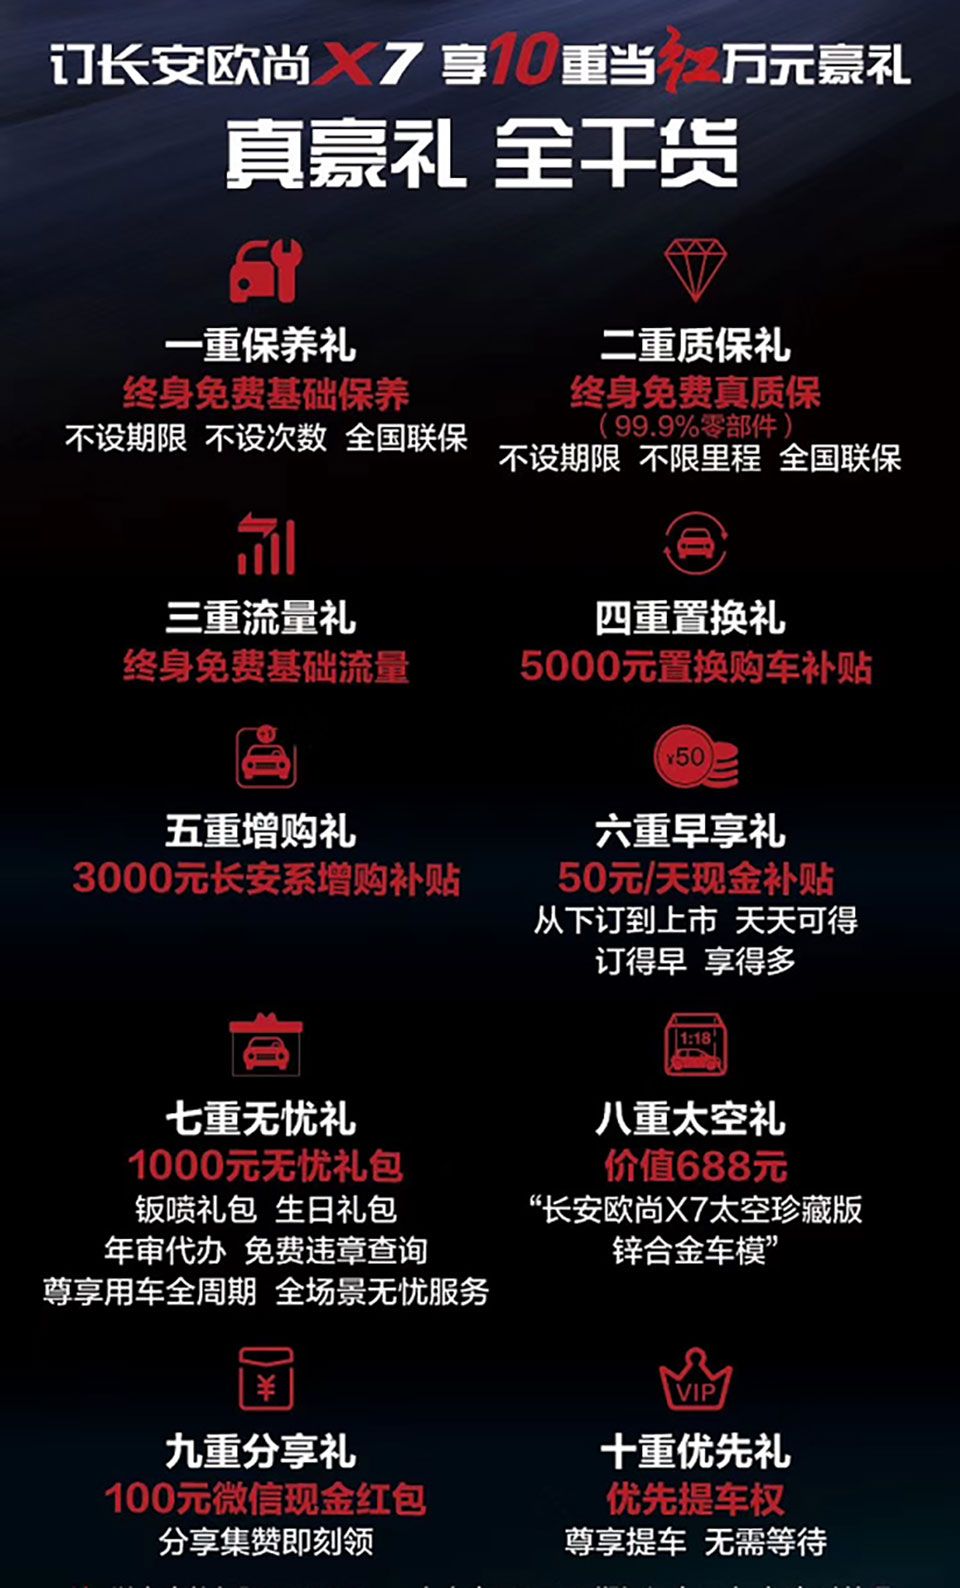 “当红一代”长安欧尚X7将于11月29日在北京人民大会堂上市